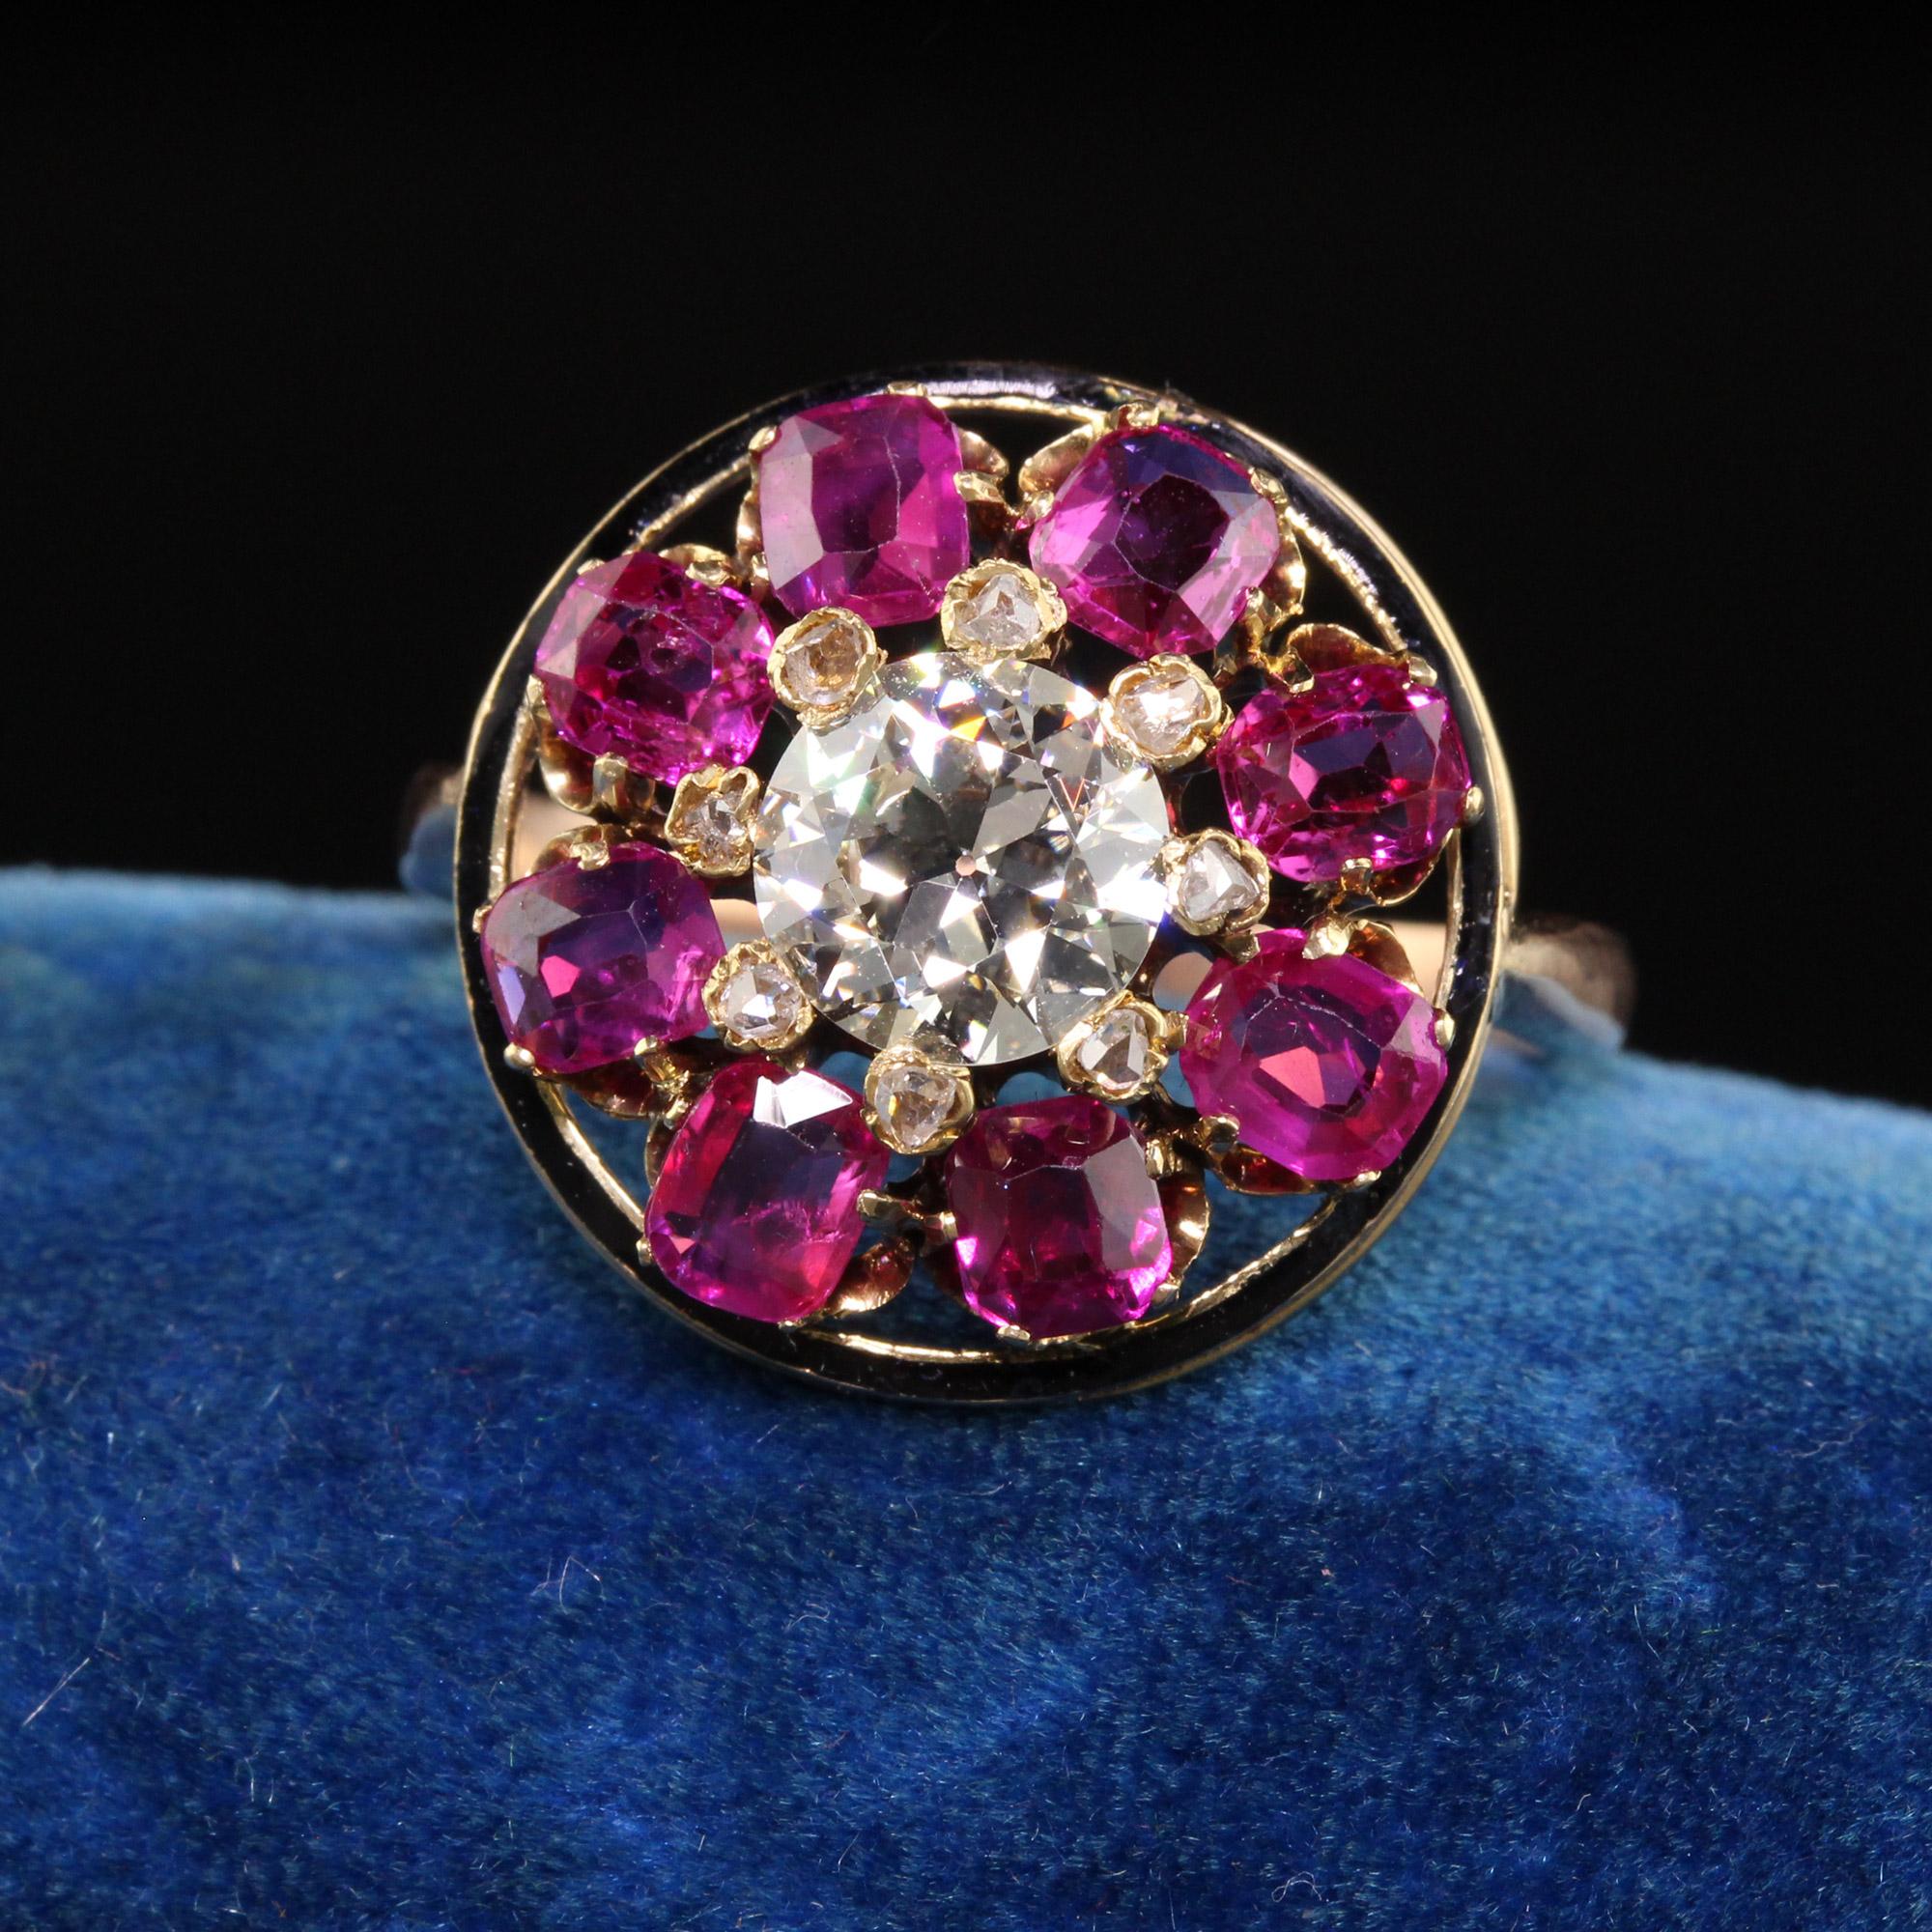 Schöne antike viktorianische 18K Gelbgold Old European Diamond Ruby Engagement Ring GIA. Dieser unglaubliche Verlobungsring ist aus 18 Karat Gelbgold gefertigt. Dieser wunderschöne Ring enthält in der Mitte einen Diamanten mit altem europäischem